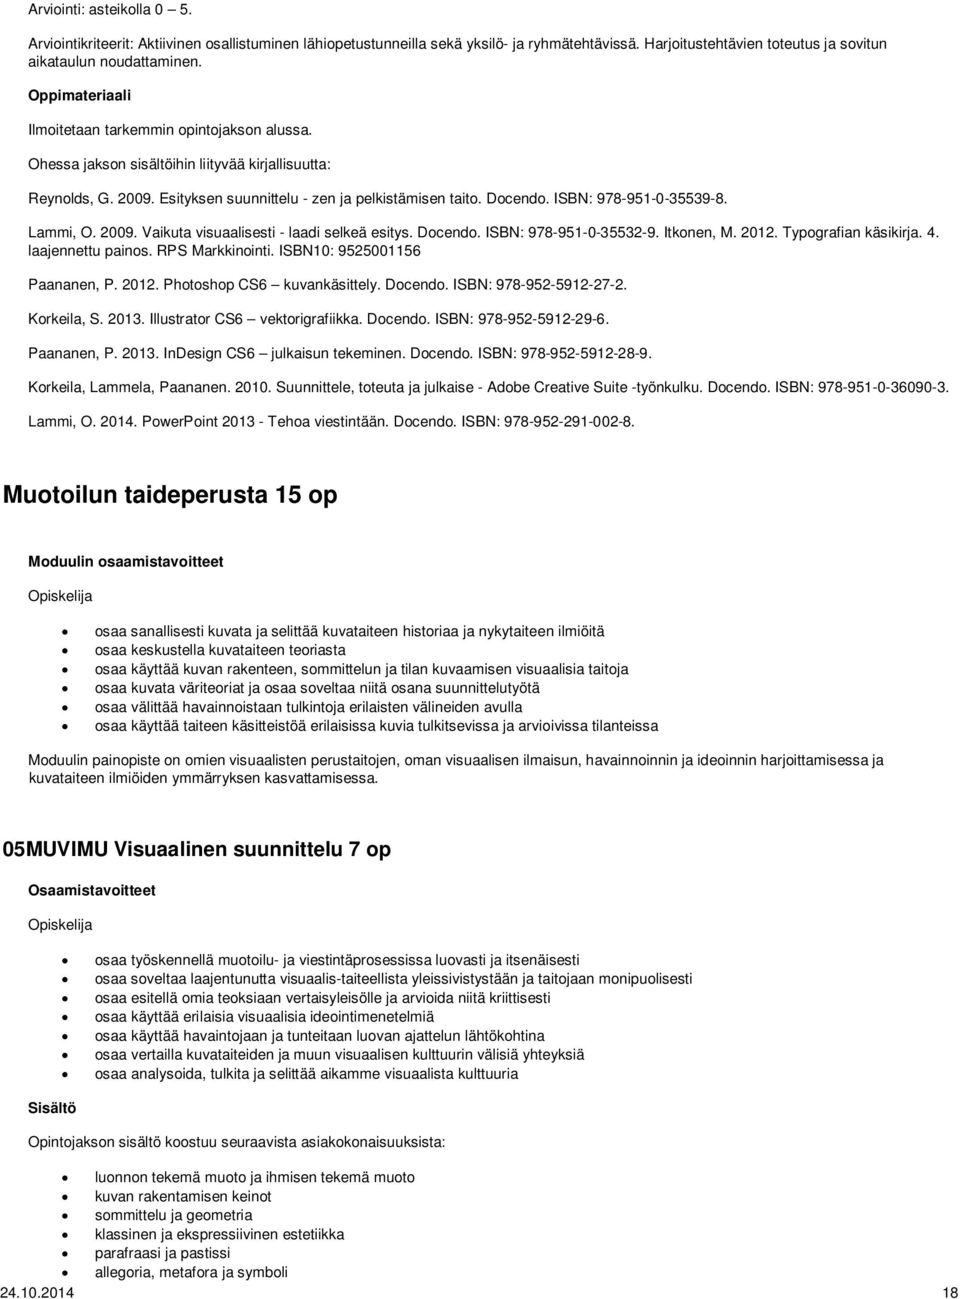 Lammi, O. 2009. Vaikuta visuaalisesti - laadi selkeä esitys. Docendo. ISBN: 978-951-0-35532-9. Itkonen, M. 2012. Typografian käsikirja. 4. laajennettu painos. RPS Markkinointi.